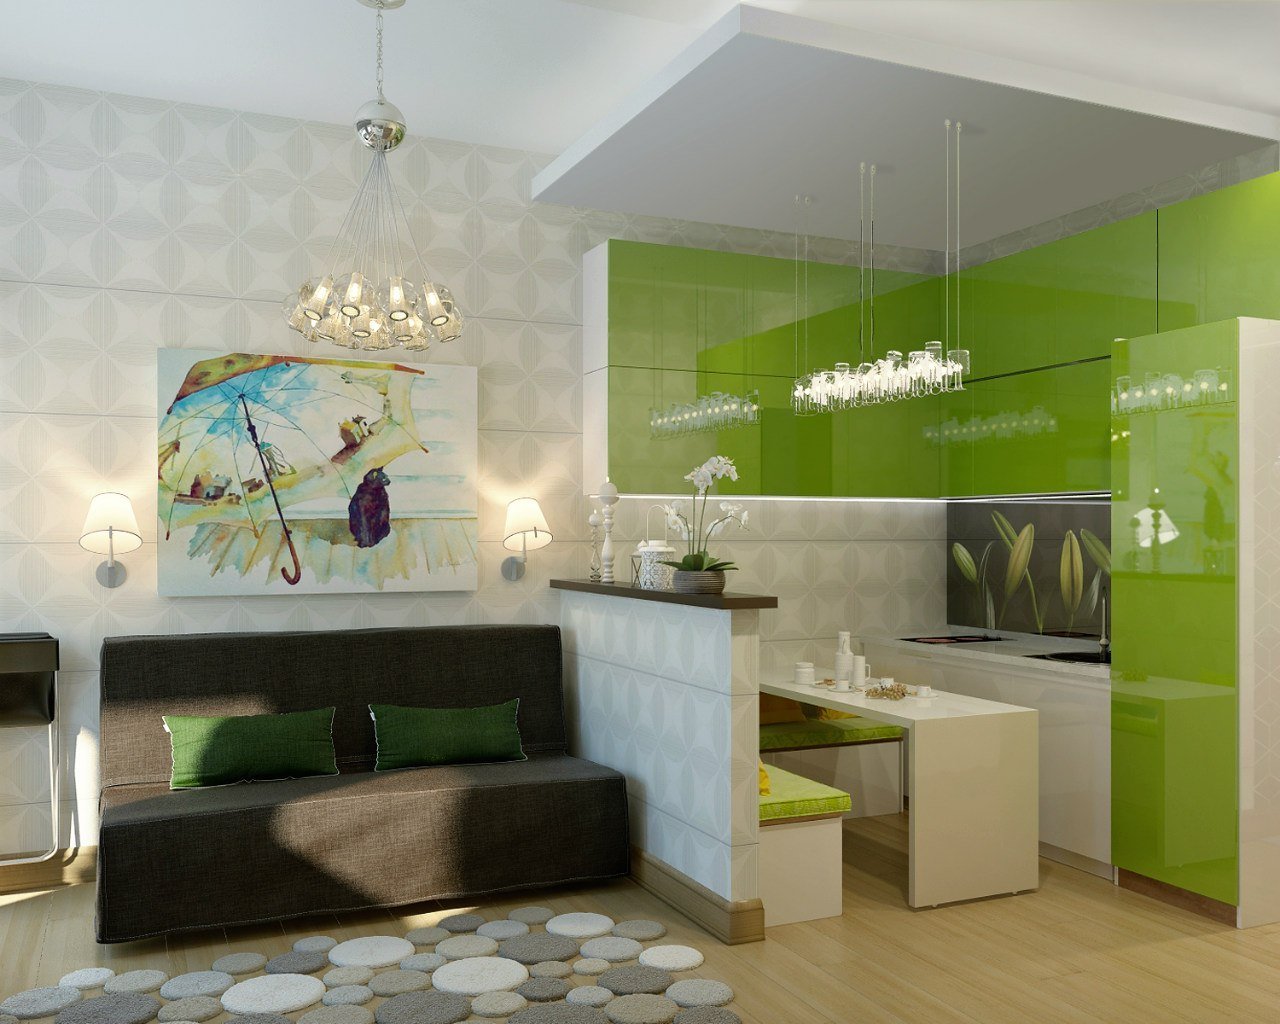 Однокомнатная квартира гостинка. Зеленая кухня с гостинной 20кв м. Кухня гостиная в зеленых тонах. Интерьер кухни в гостинке. Кухня гостиная в зеленом цвете.